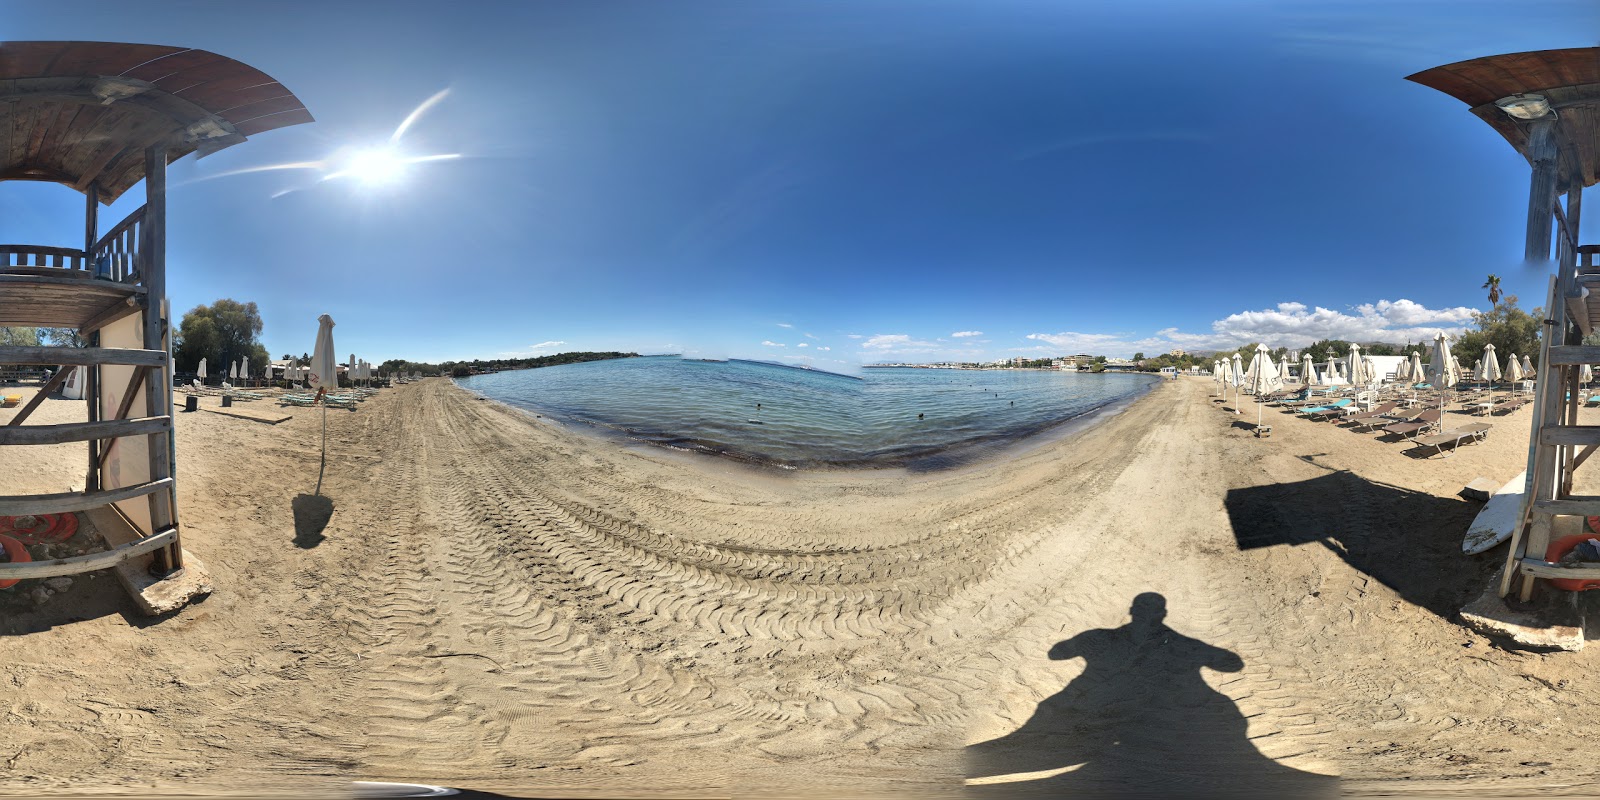 Foto de Astera com areia marrom superfície